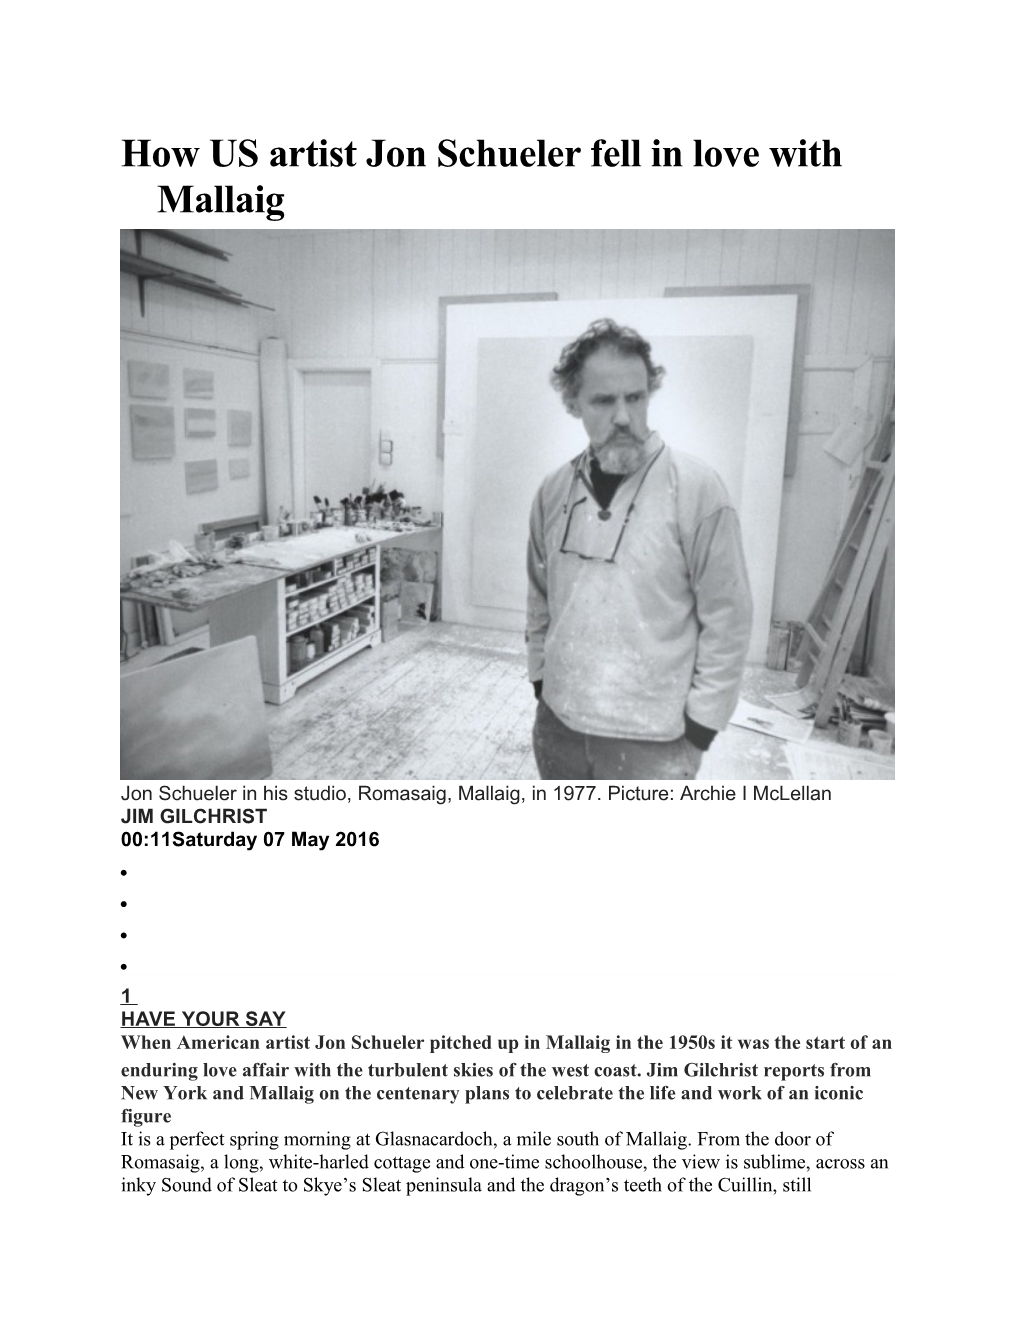 How US Artist Jon Schueler Fell in Love with Mallaig